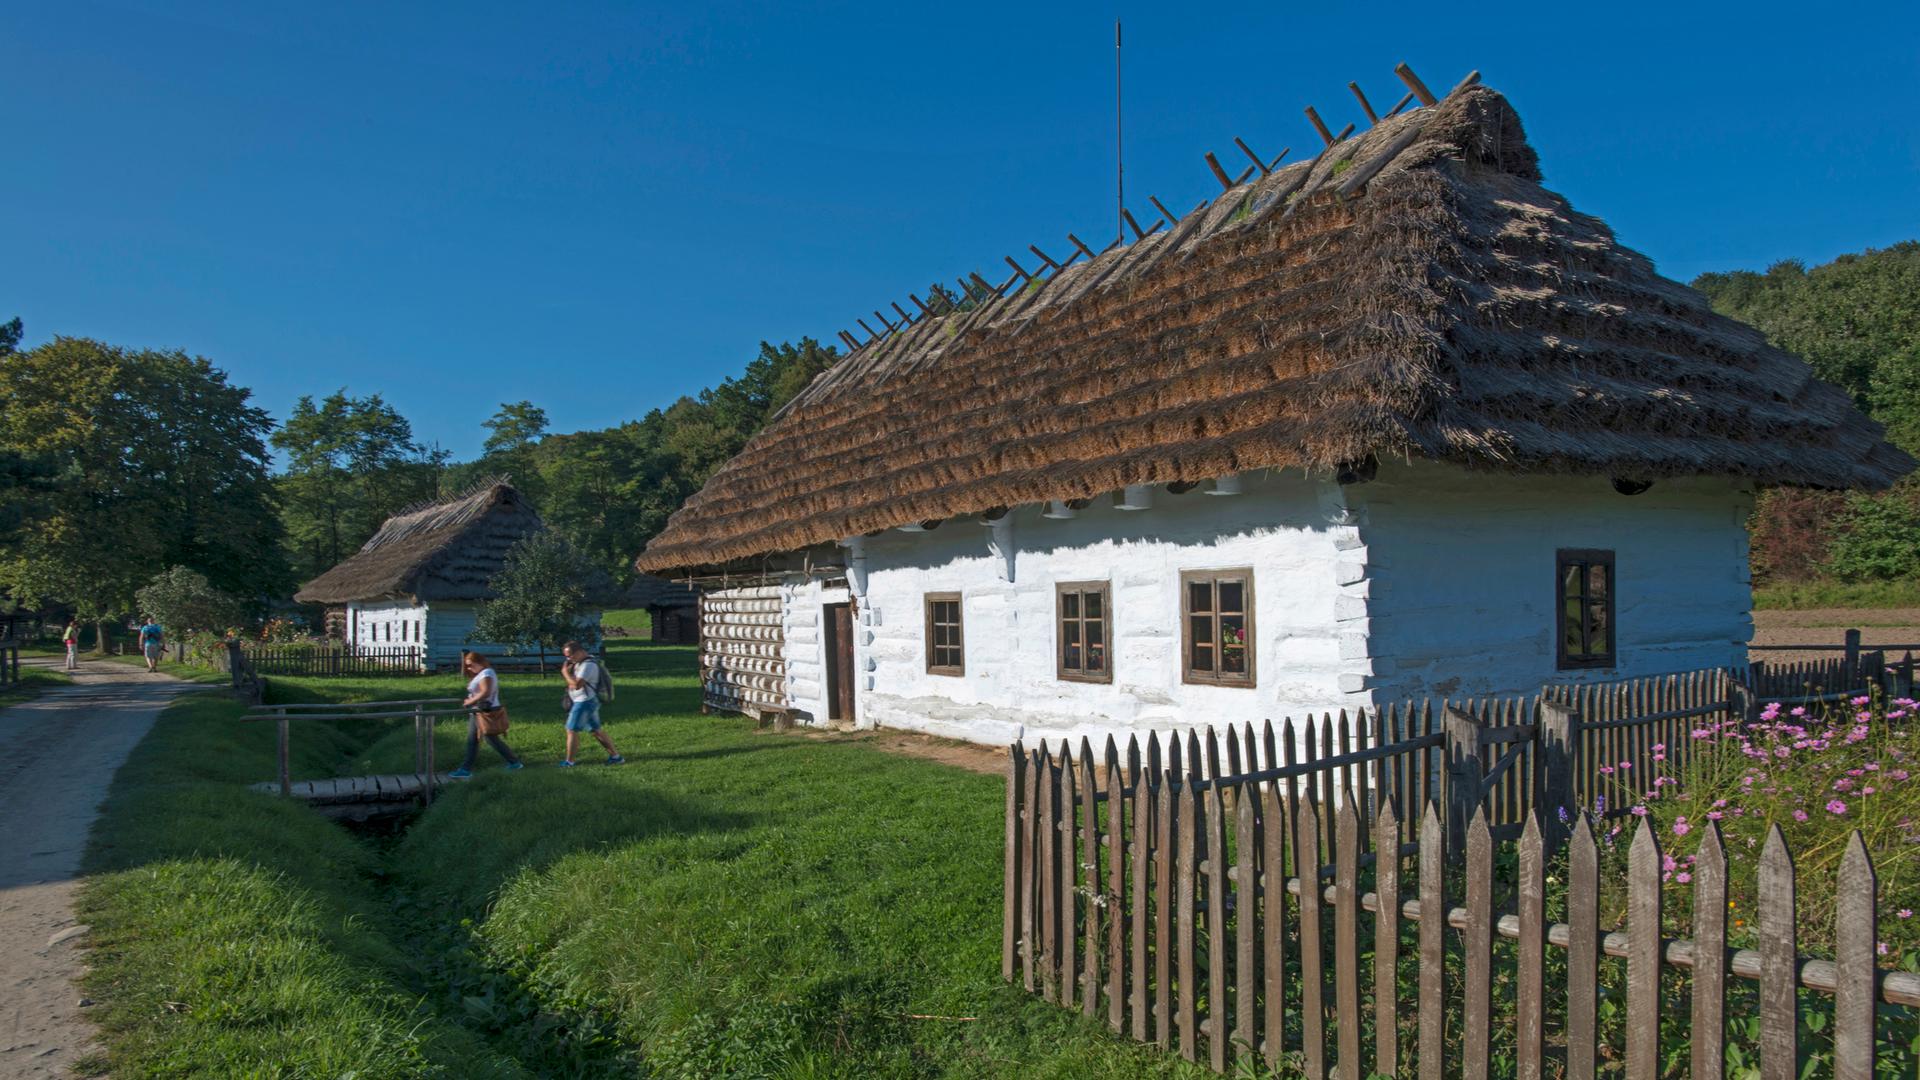 Freilichtmuseum Sanok im Karapartenvorland: Ethnografischer Park mit Häusern in der traditionelllen  Bauweise  der Lemken und Bojken
 
